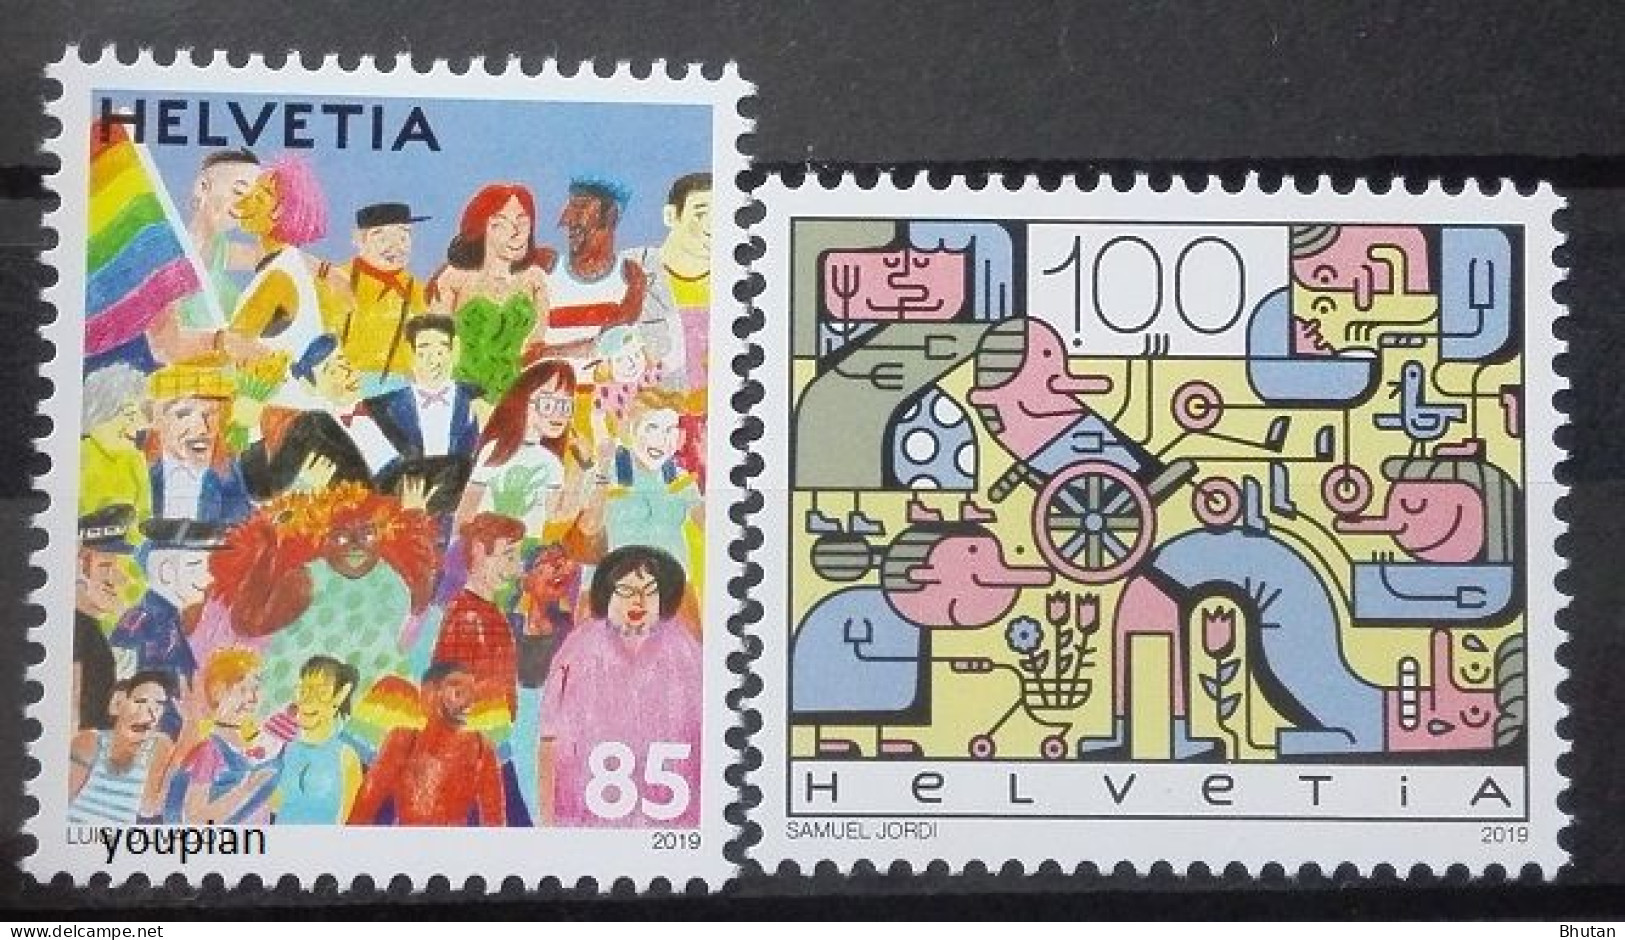 Switzerland 2019, Joint Issue With Liechtenstein, MNH Stamps Set - Neufs